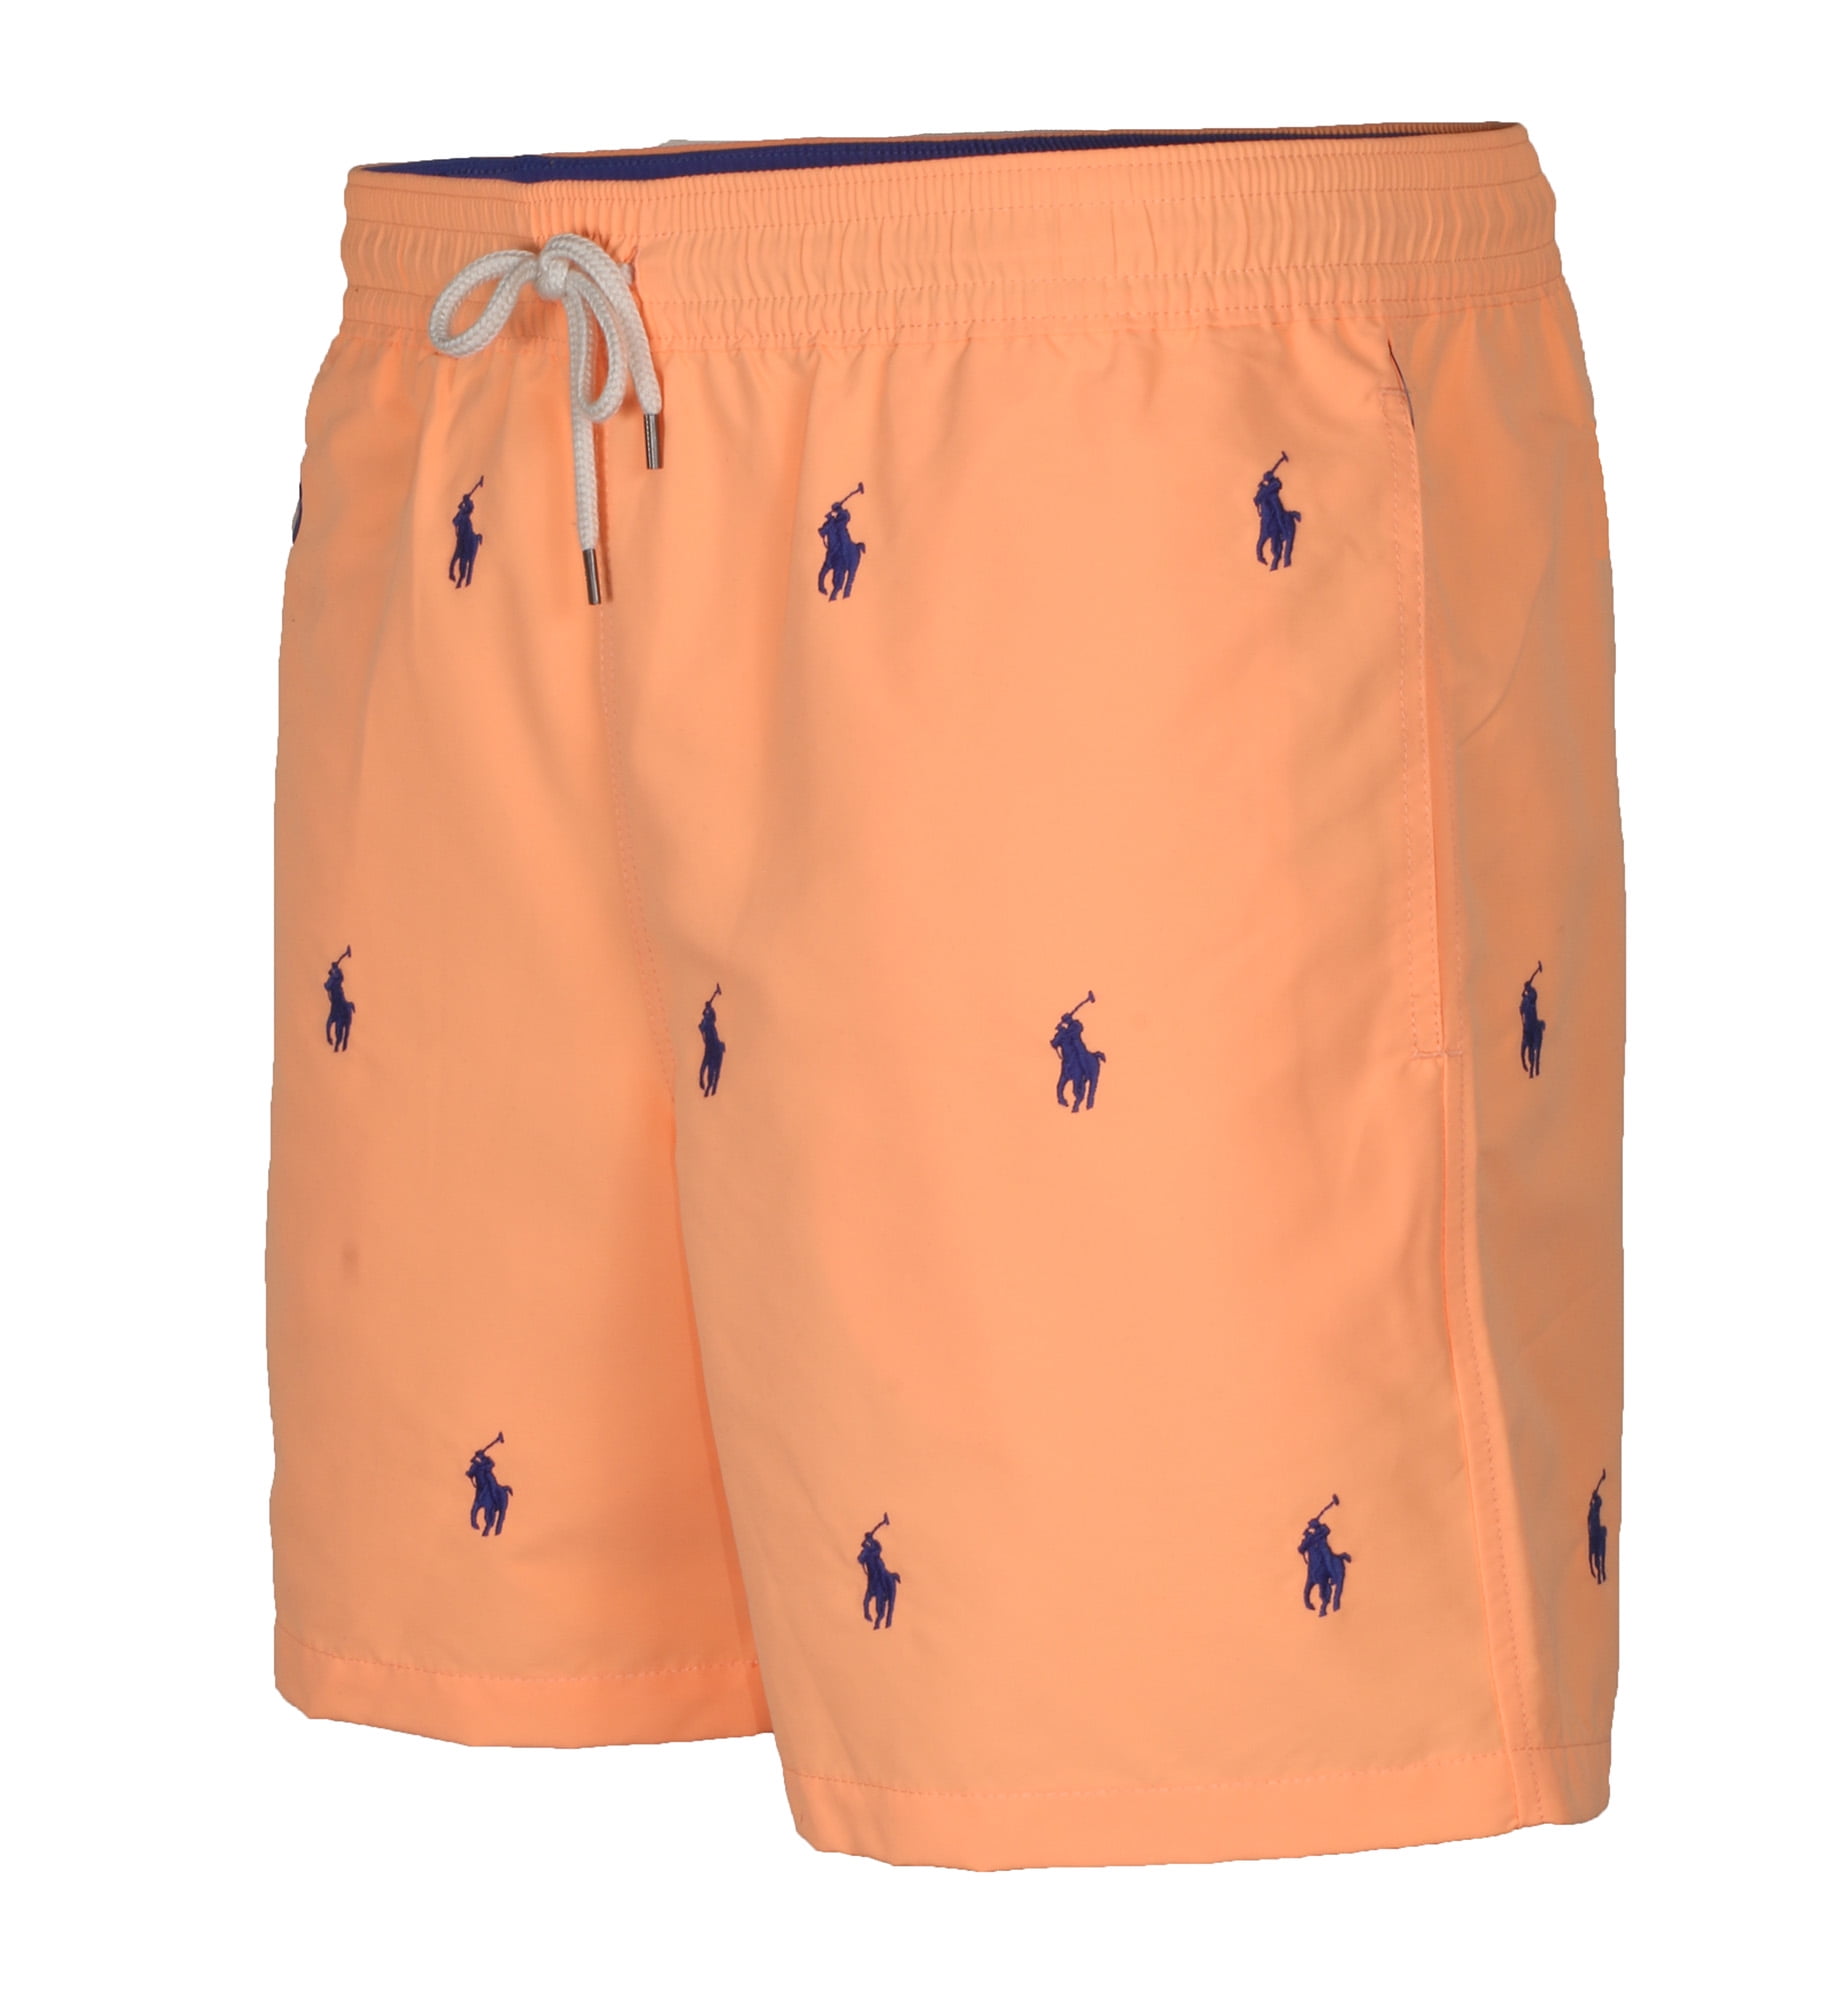 Polo RL Men's 5 in Traveler All over pony Classic Swim Trunks Shorts  (Orange, X-Large)